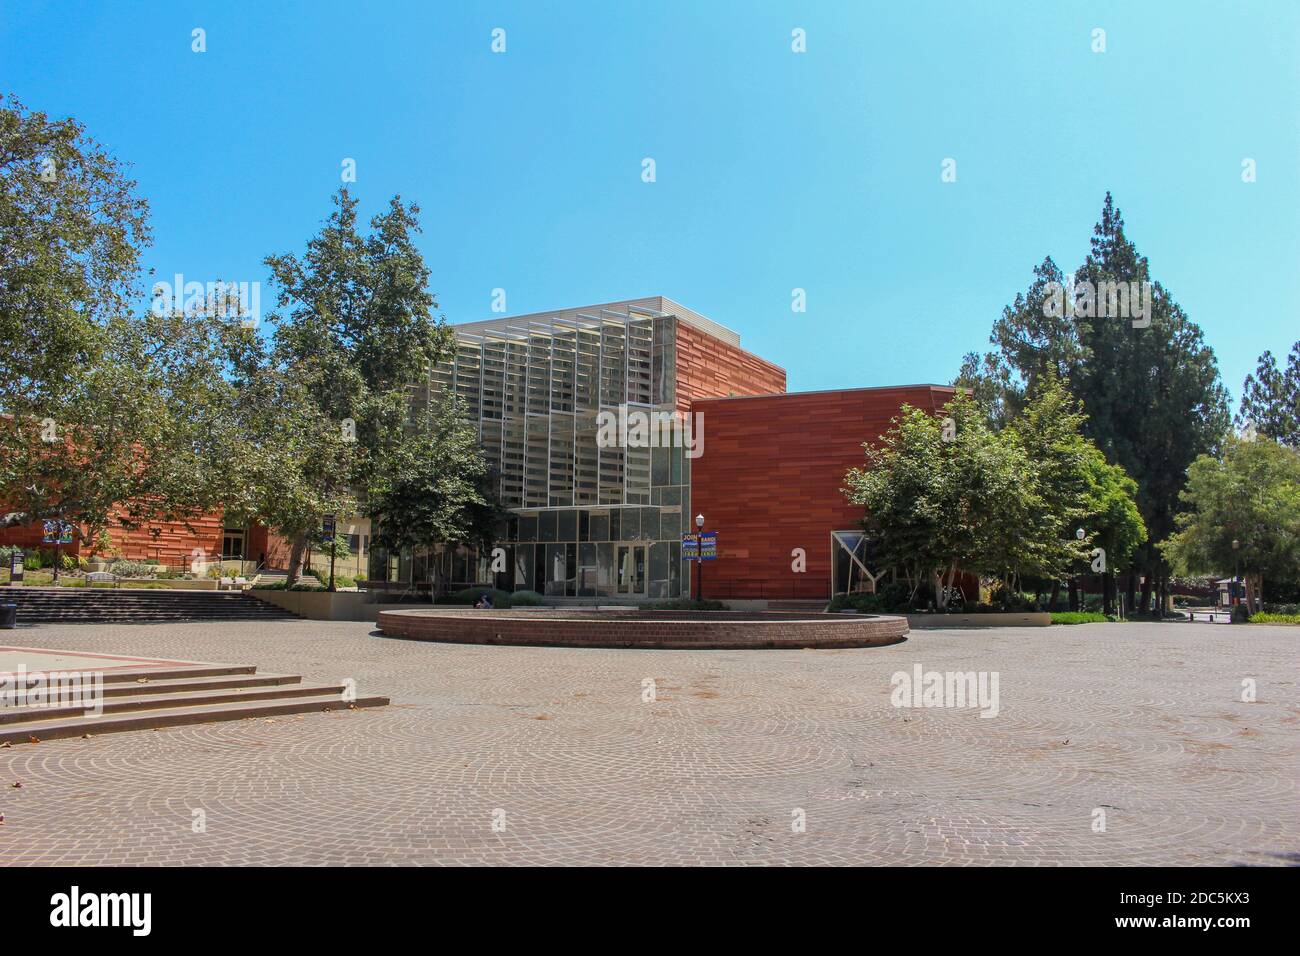 Los Angeles, California - 23 luglio 2017: Herb Alpert School of Music nel campus dell'Università della California, Los Angeles (UCLA). Foto Stock